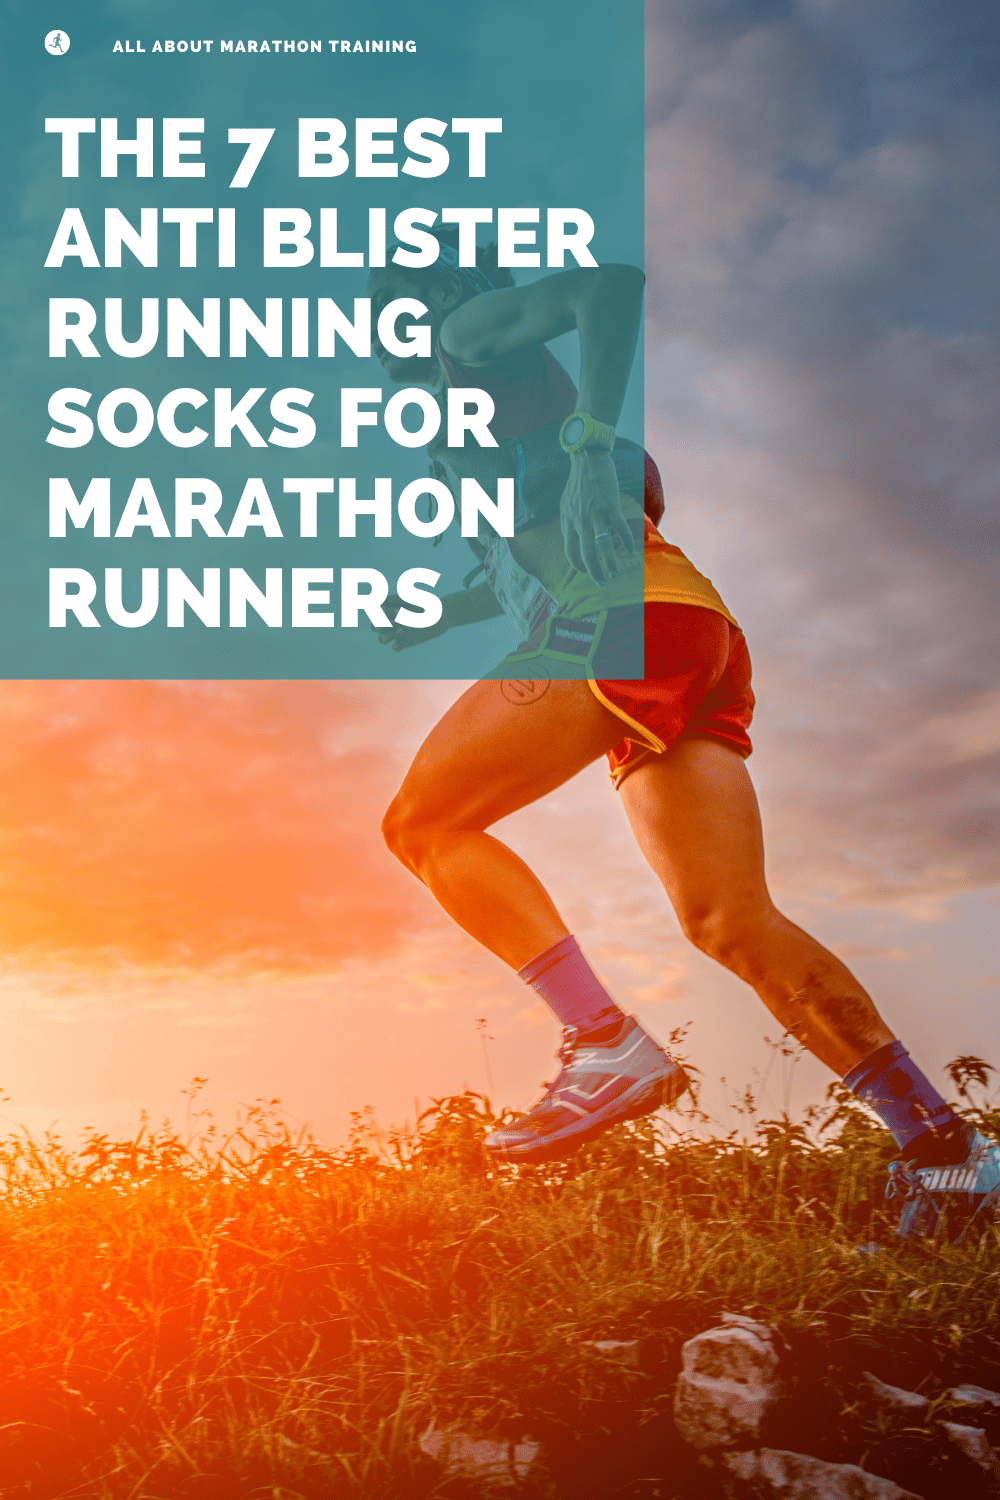 The 7 Best Anti Blister Running Socks for Marathon Runners